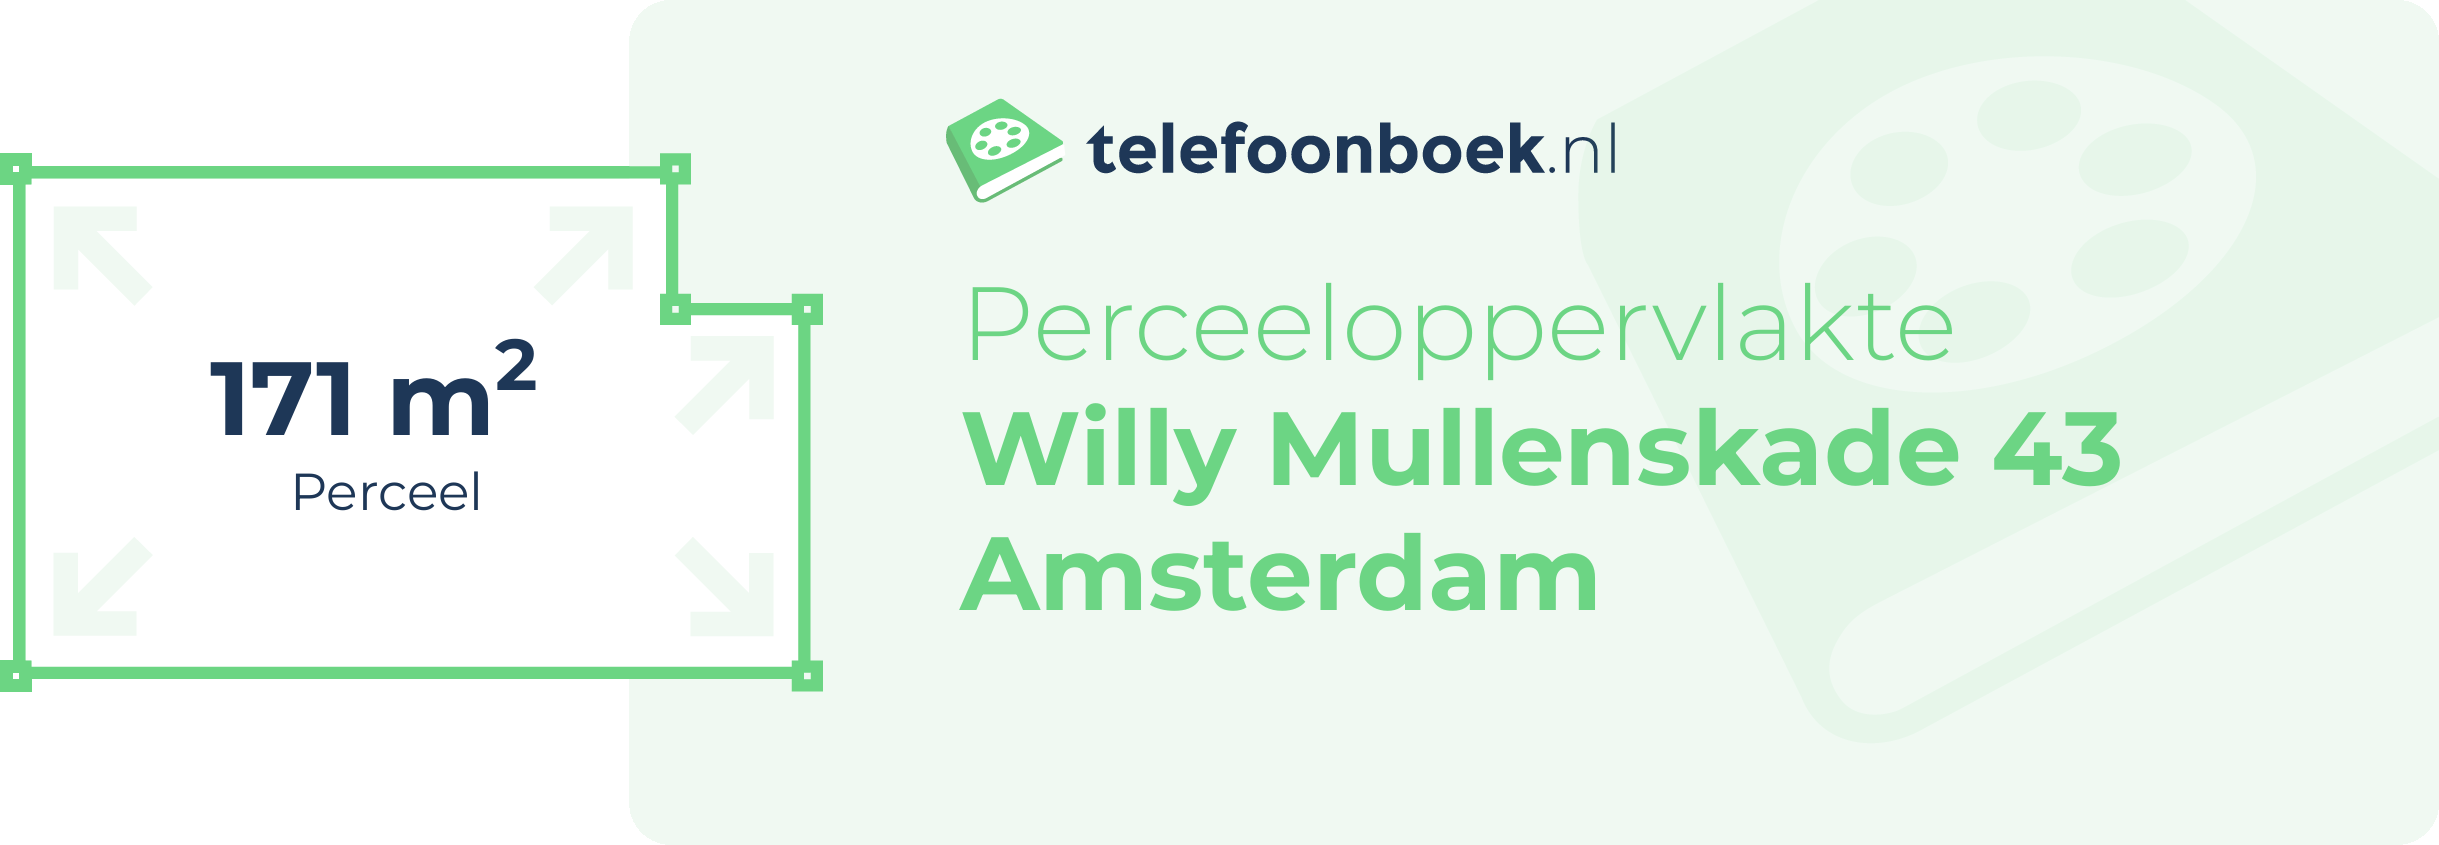 Perceeloppervlakte Willy Mullenskade 43 Amsterdam